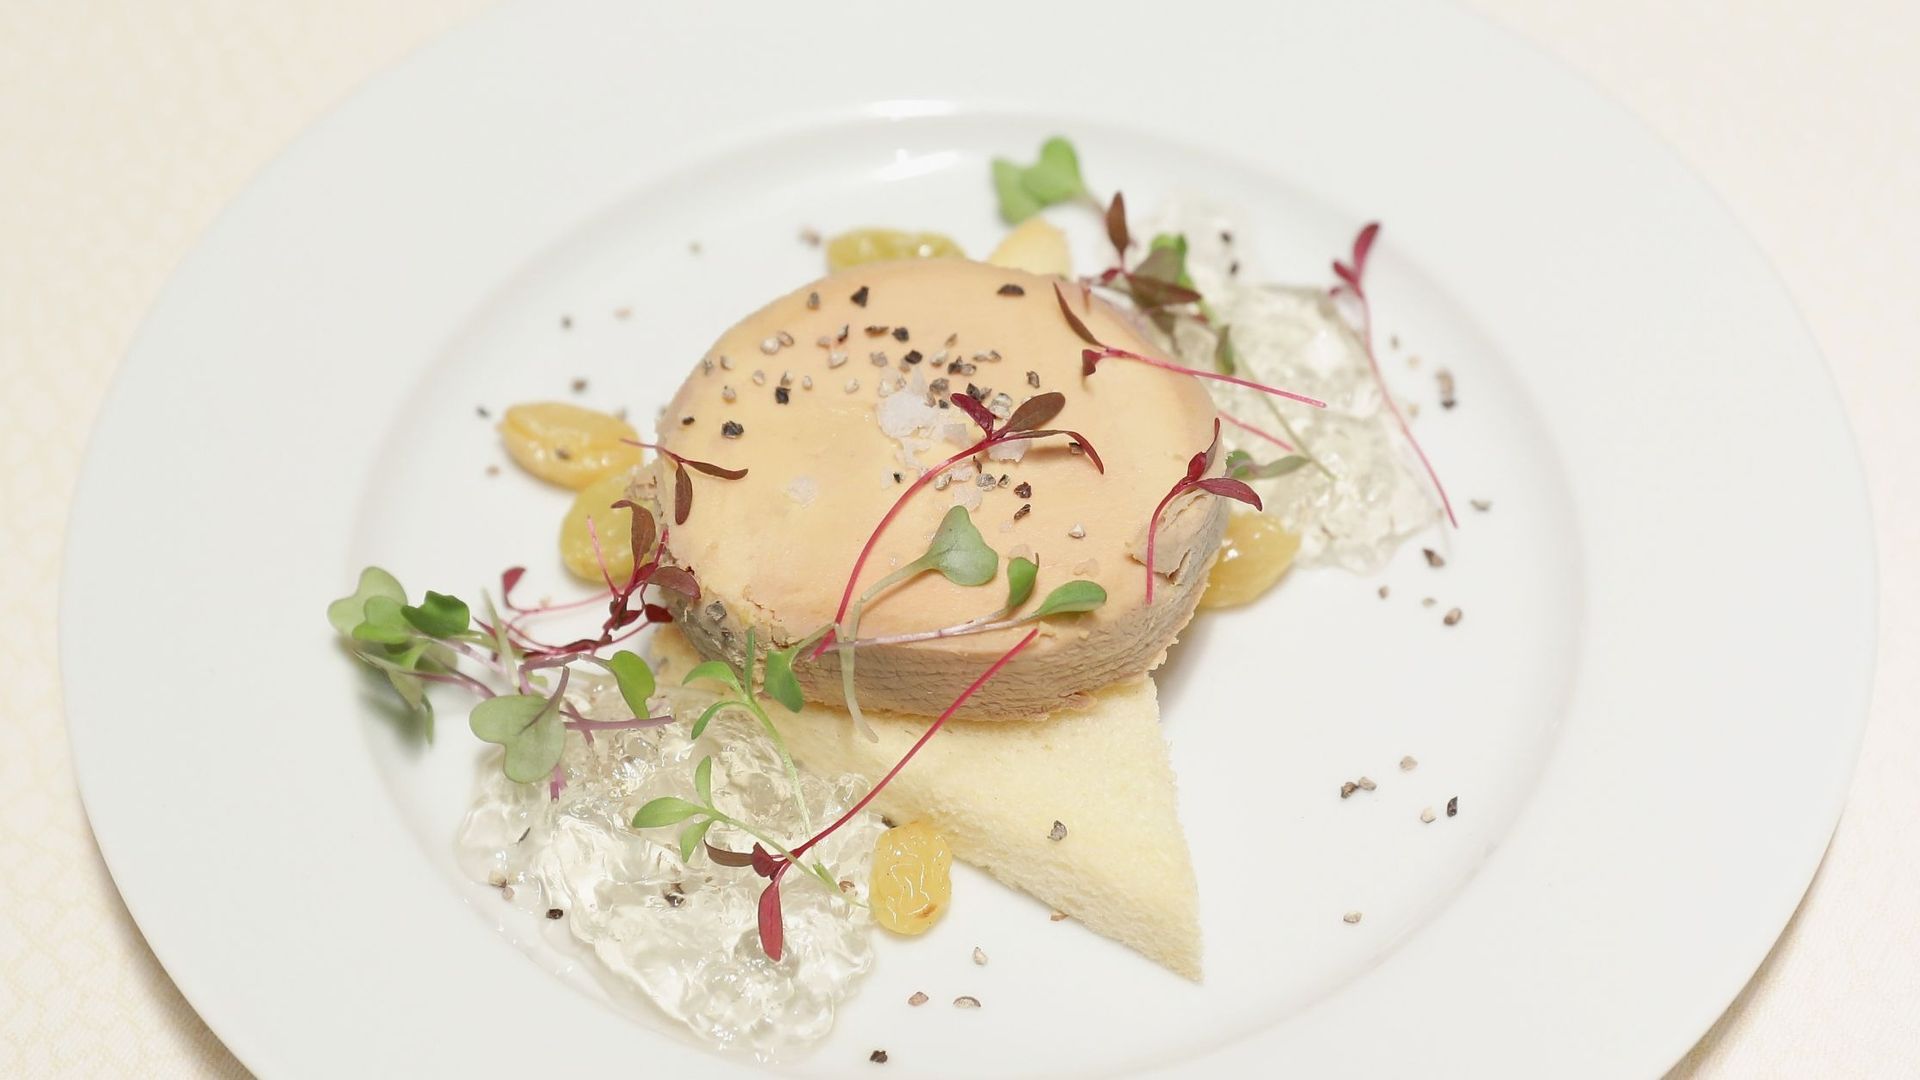 Un foie gras sans gavage - L'Avenir